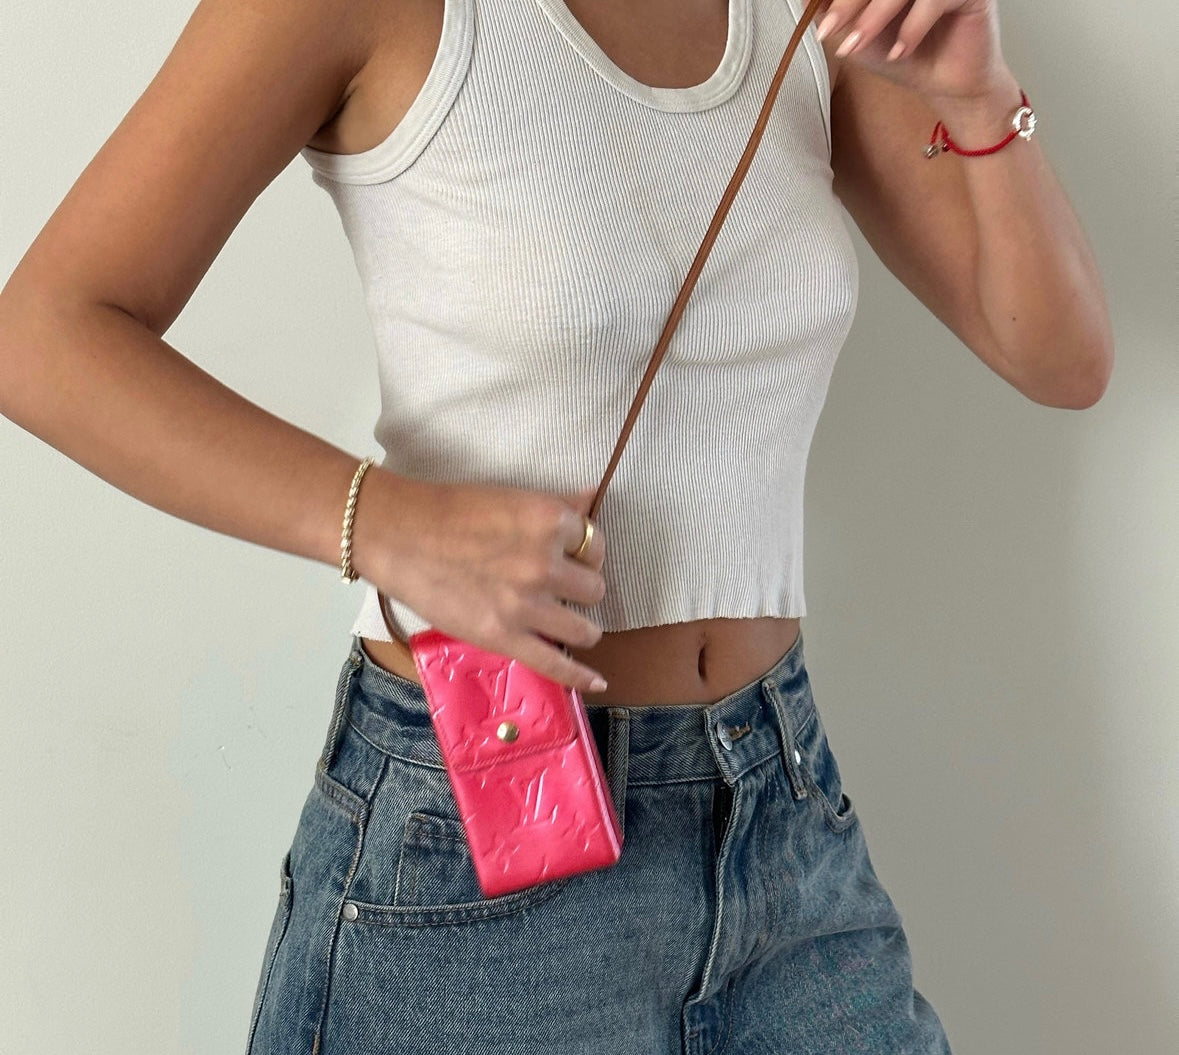 Louis Vuitton Pink Vernis Cigarette Case Bag